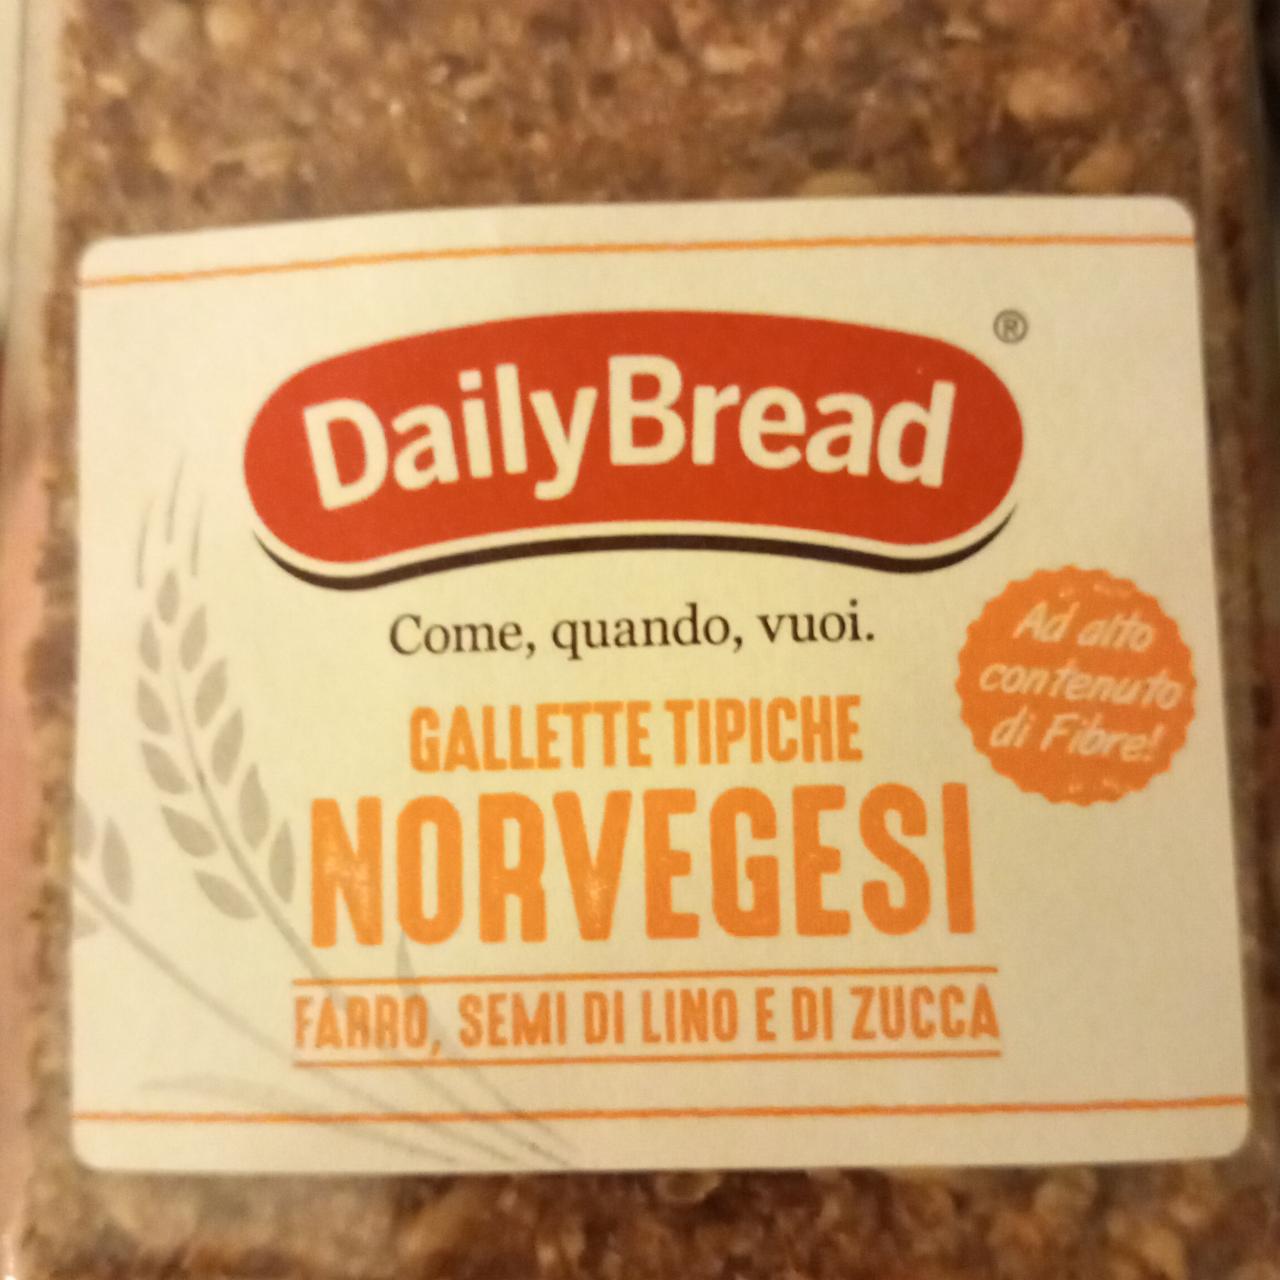 Fotografie - Gallette Tipiche Norvegesi Daily Bread